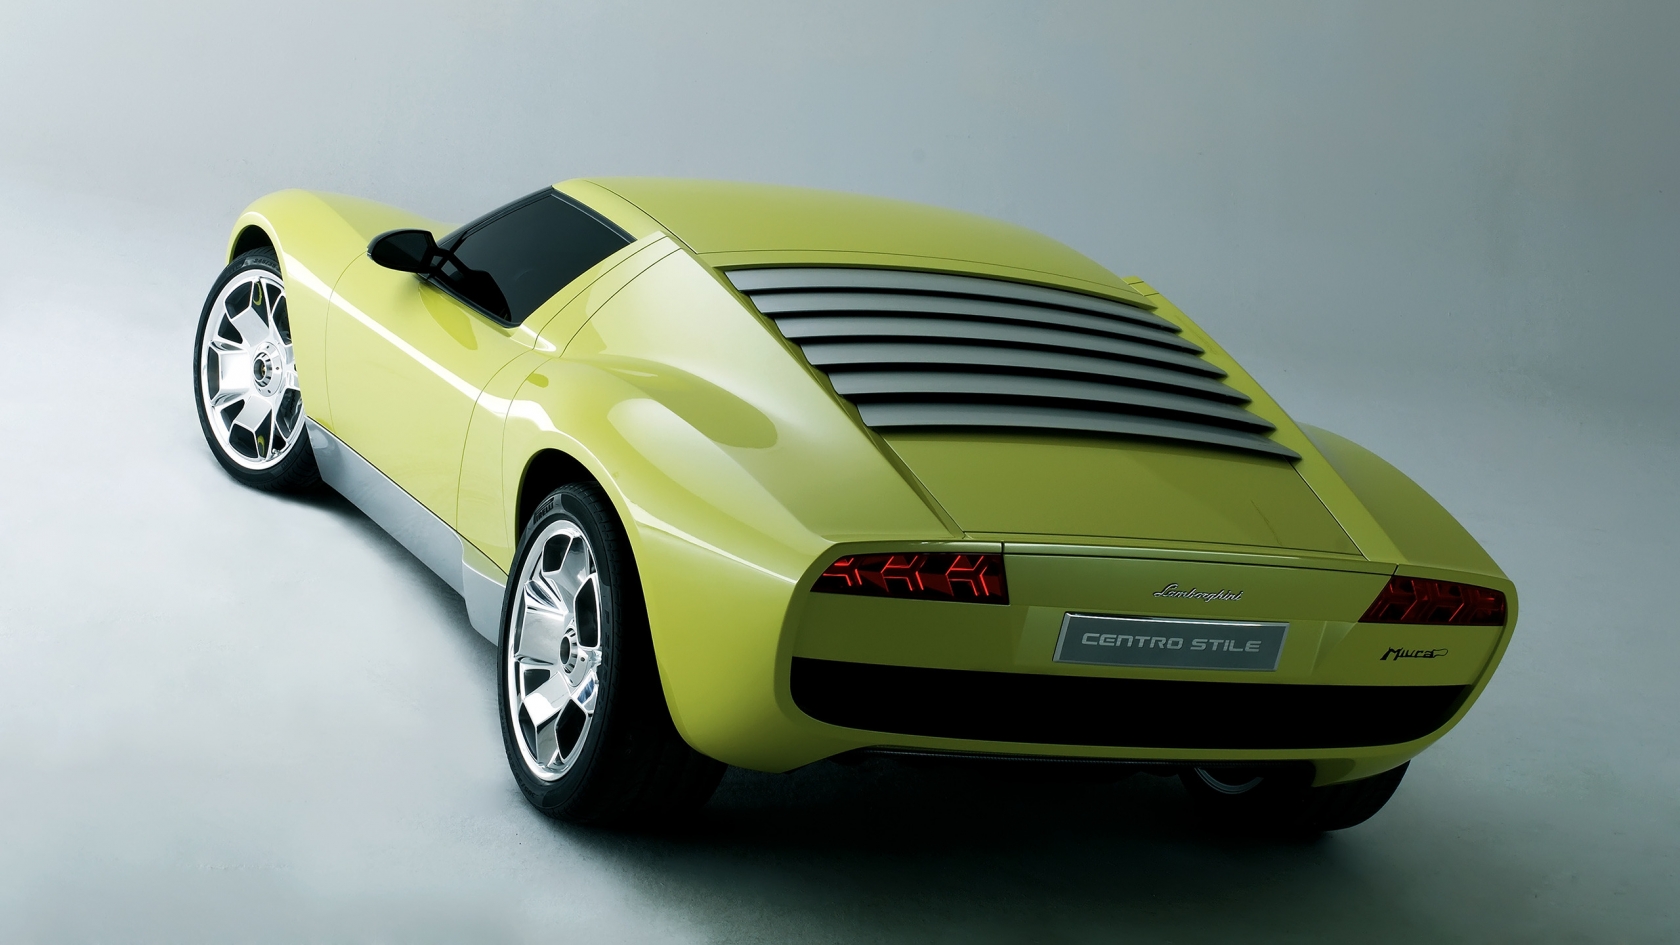 Lamborghini Miura Concept Rear for 1680 x 945 HDTV resolution